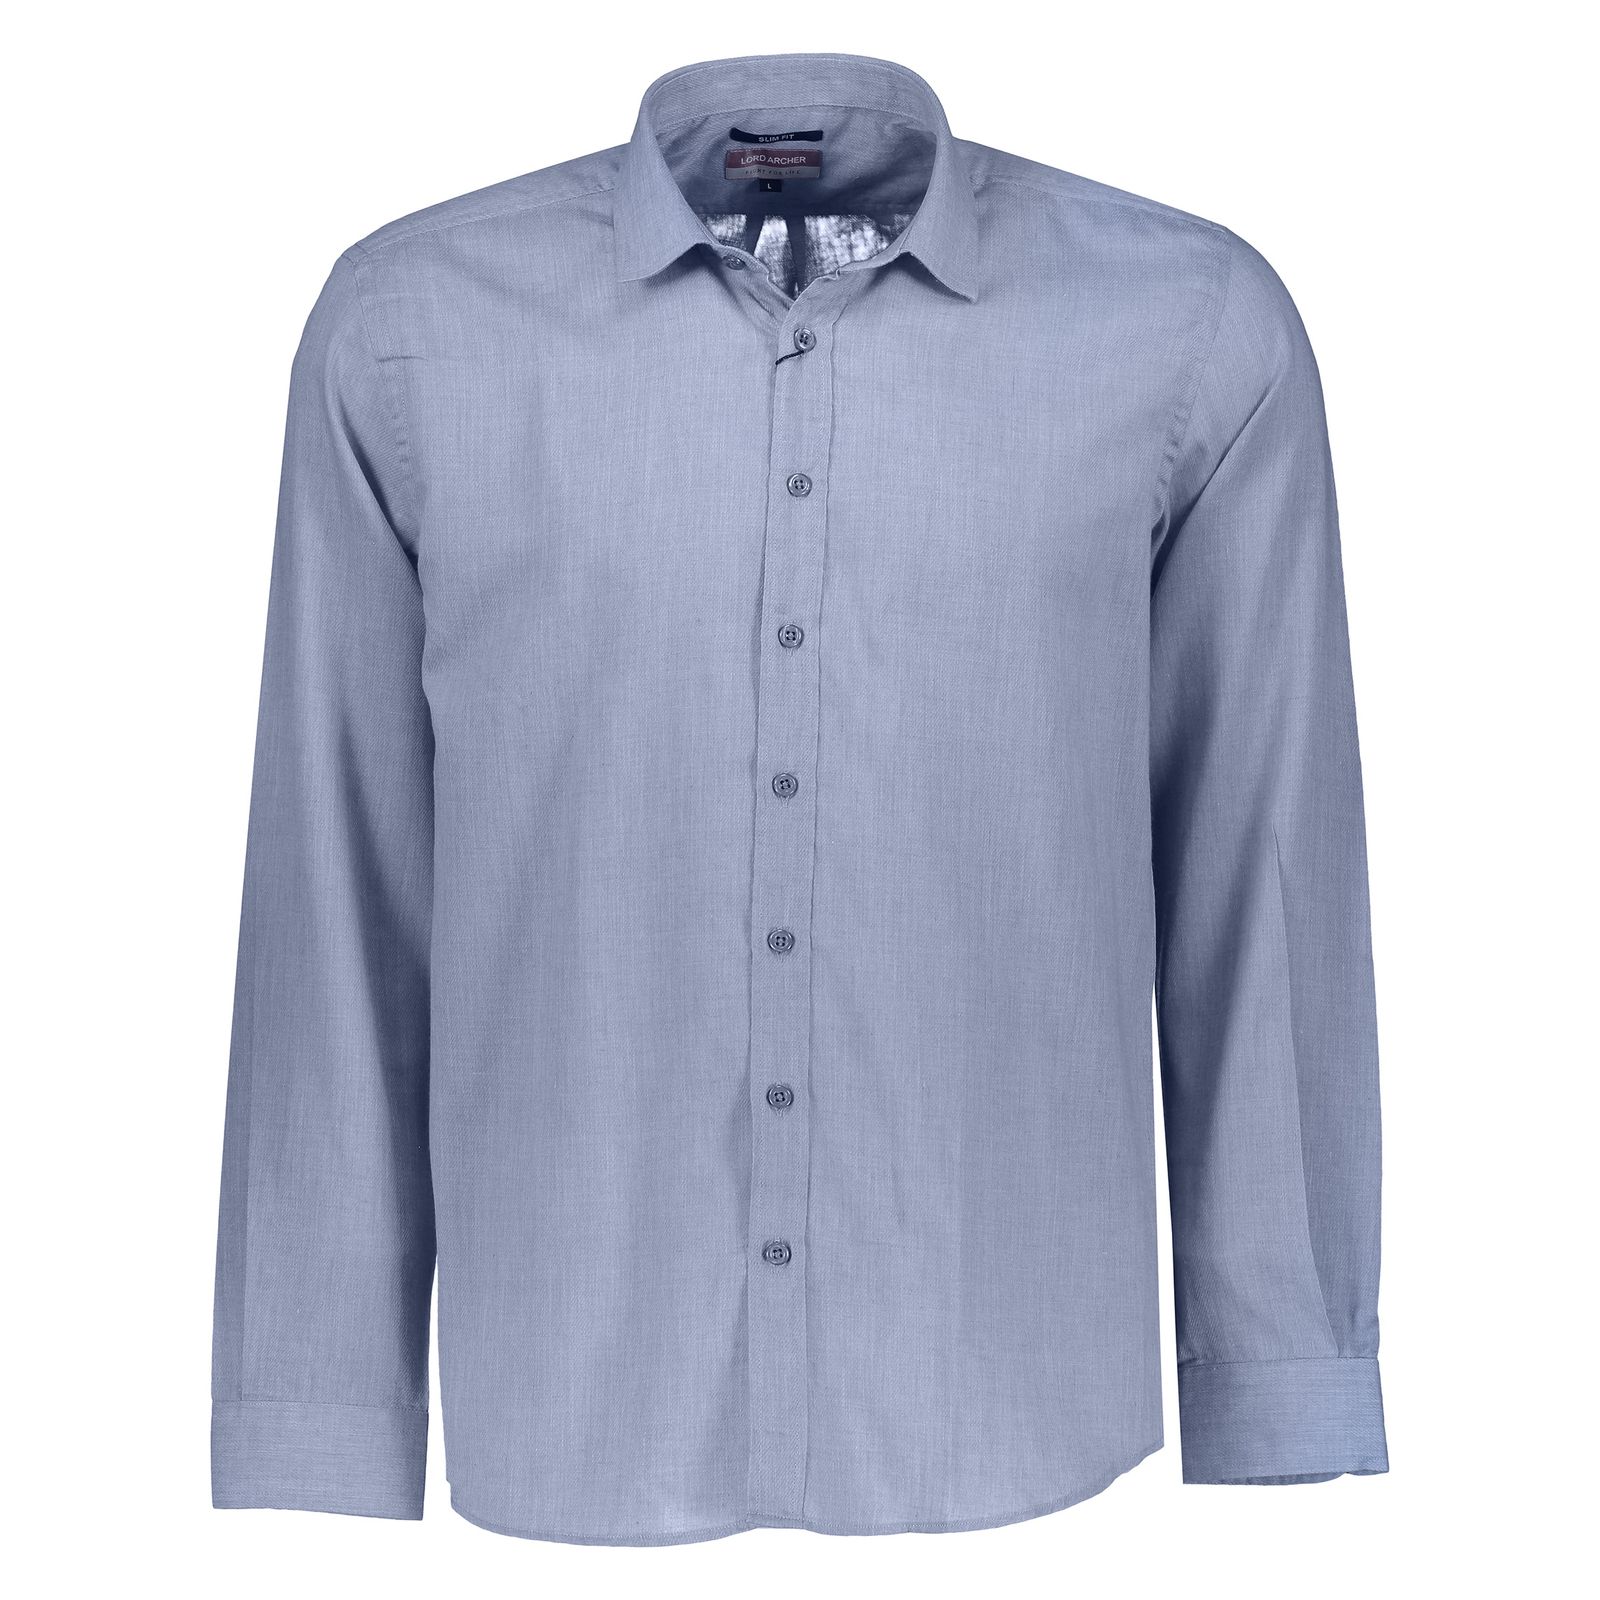 پیراهن مردانه لرد آرچر مدل 200114656 - آبی - 1